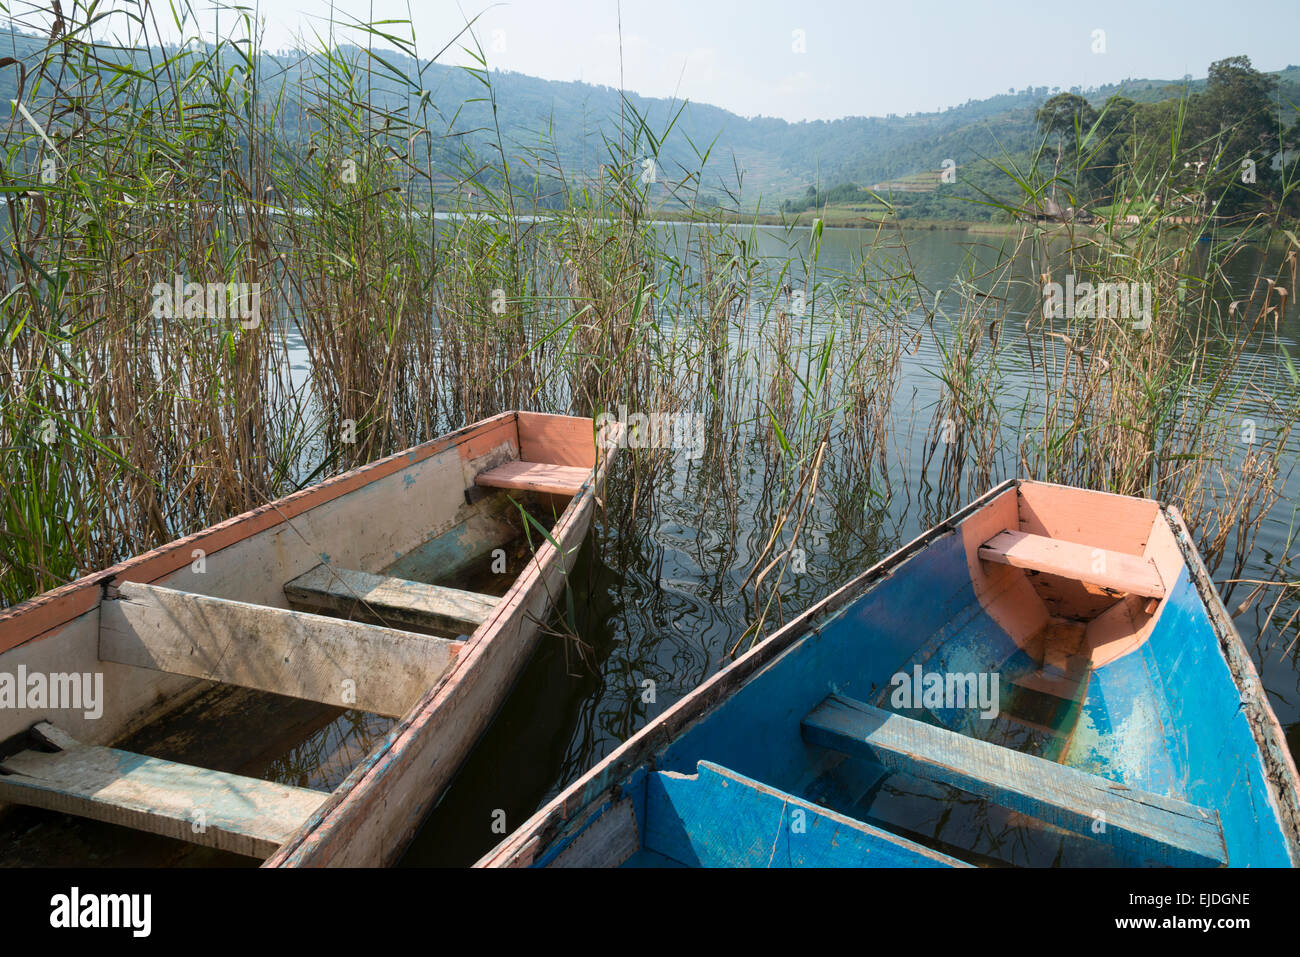 Two dingy boats on lake Bunyonyi. Uganda. Stock Photo